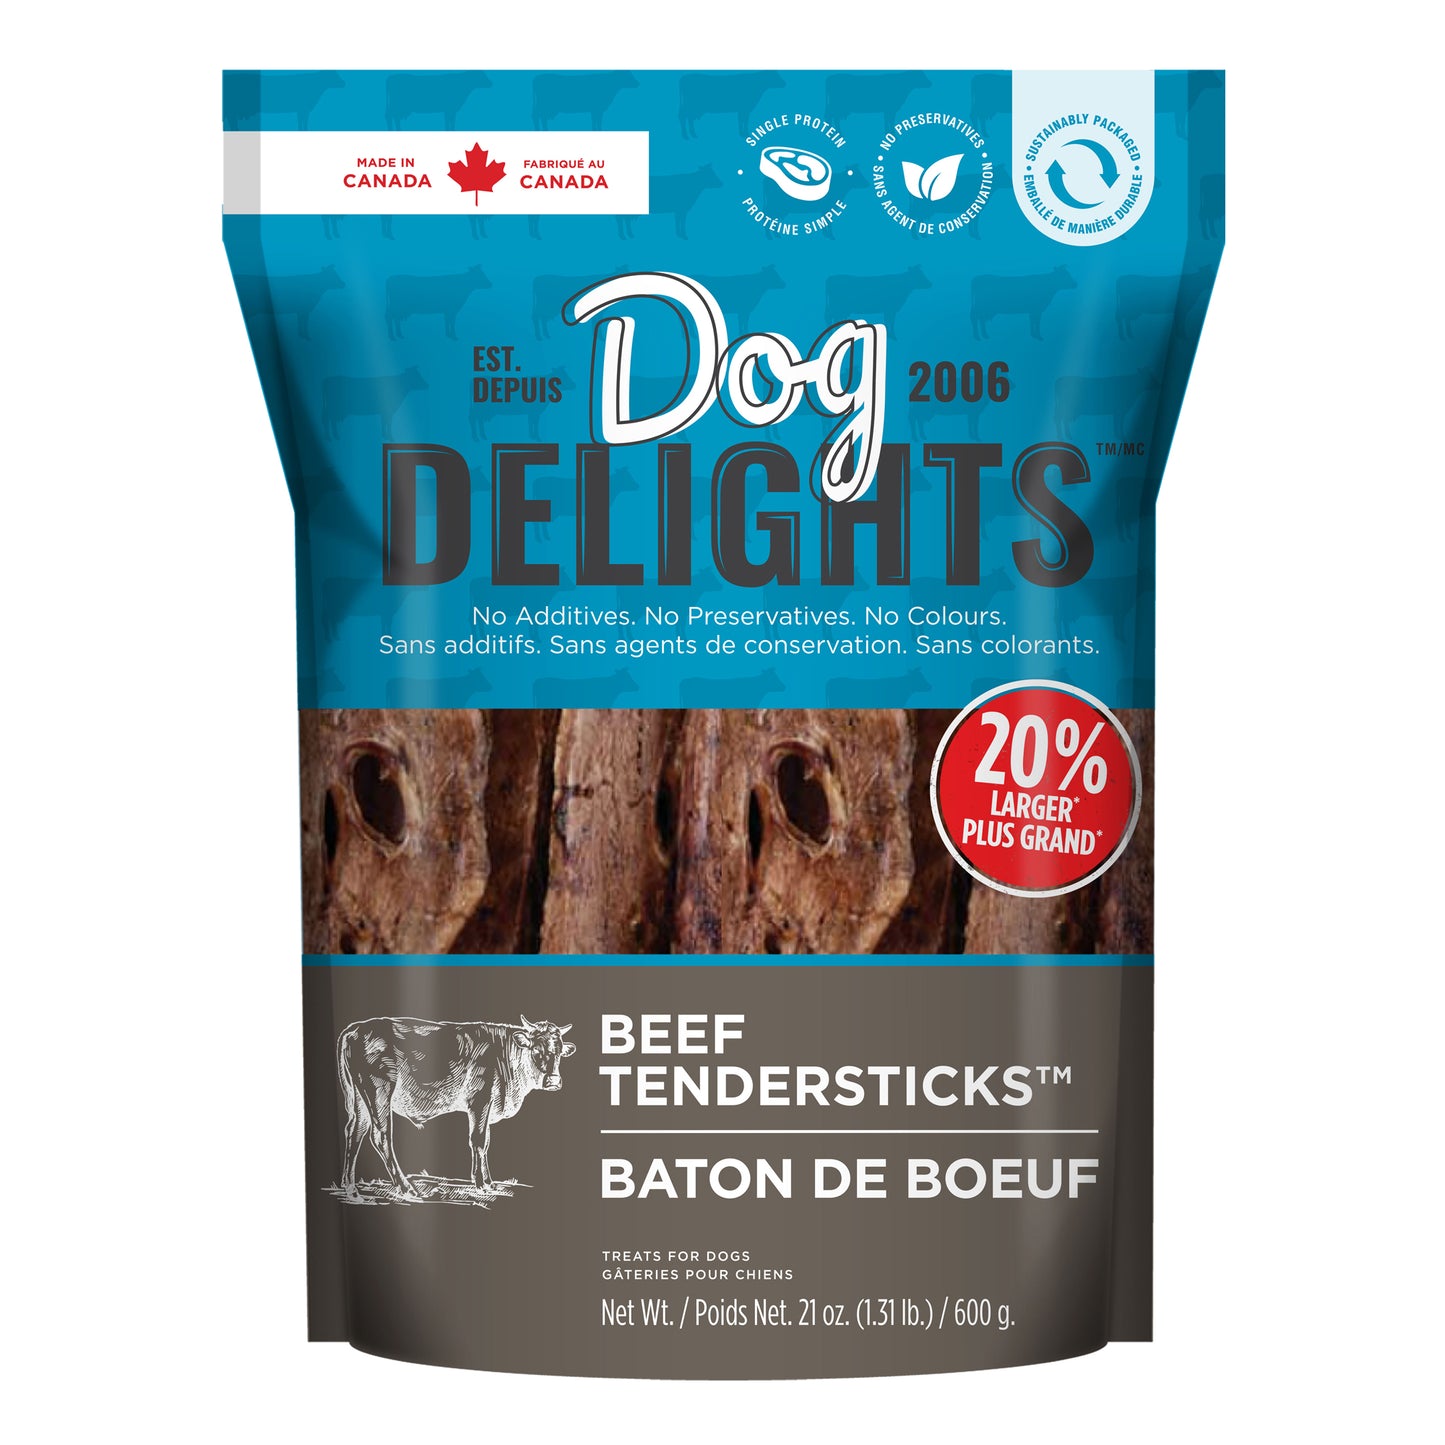 Beef Tendersticks - 600g 20% Larger